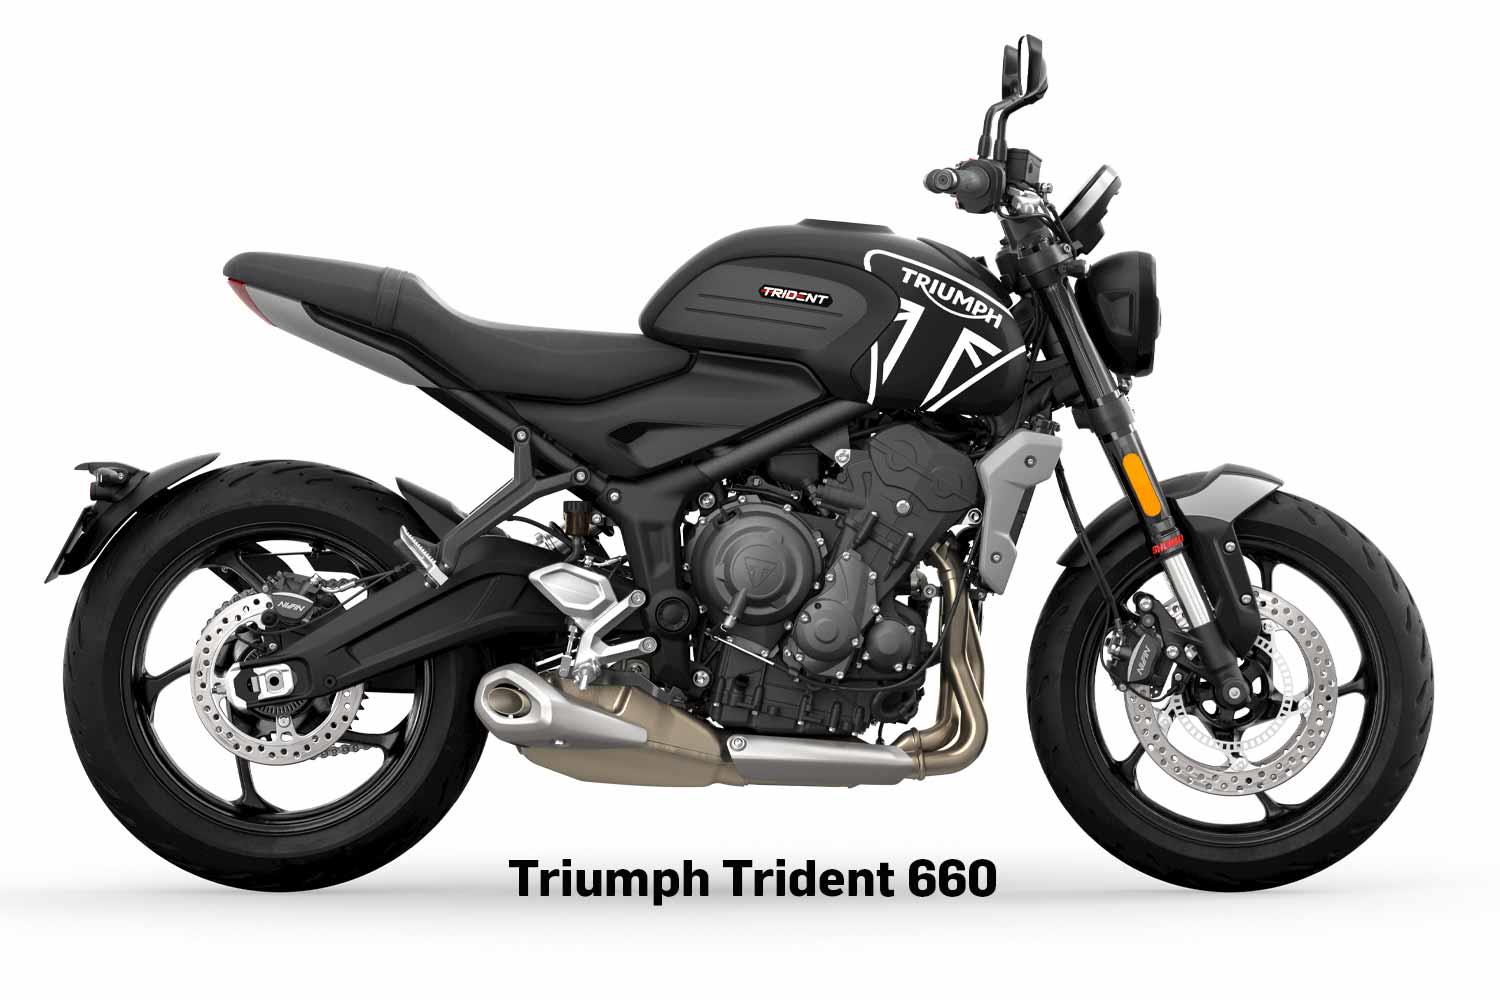 Triumph Trident 660 long-term test